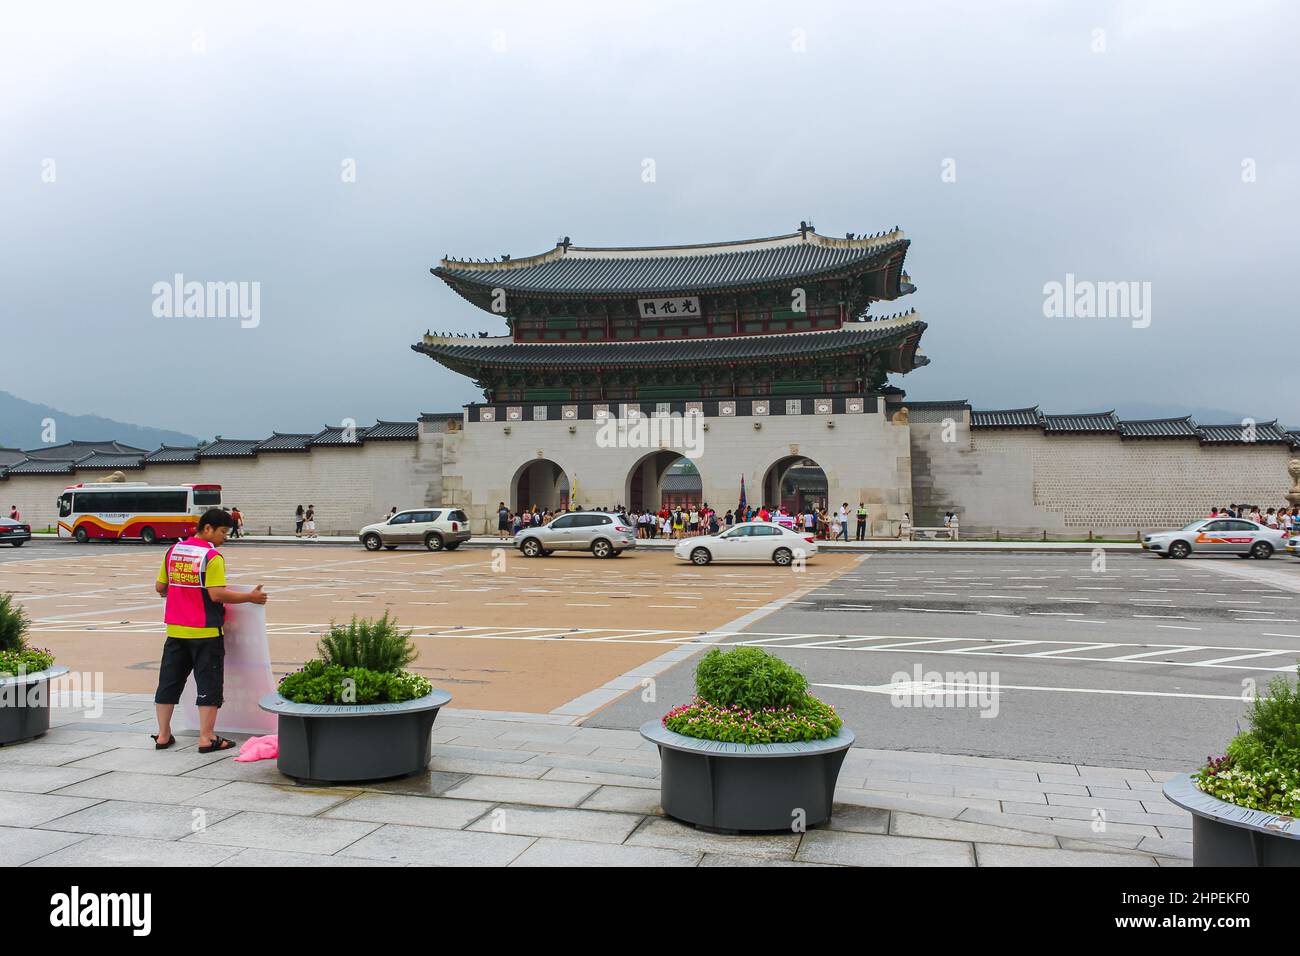 Seoul, Südkorea - 25. Juli 2020: Gwanghwamun Haupteingang zum Gyeongbokgung Palast. Wichtigster königlicher Palast der Joseon-Dynastie, cultura Stockfoto